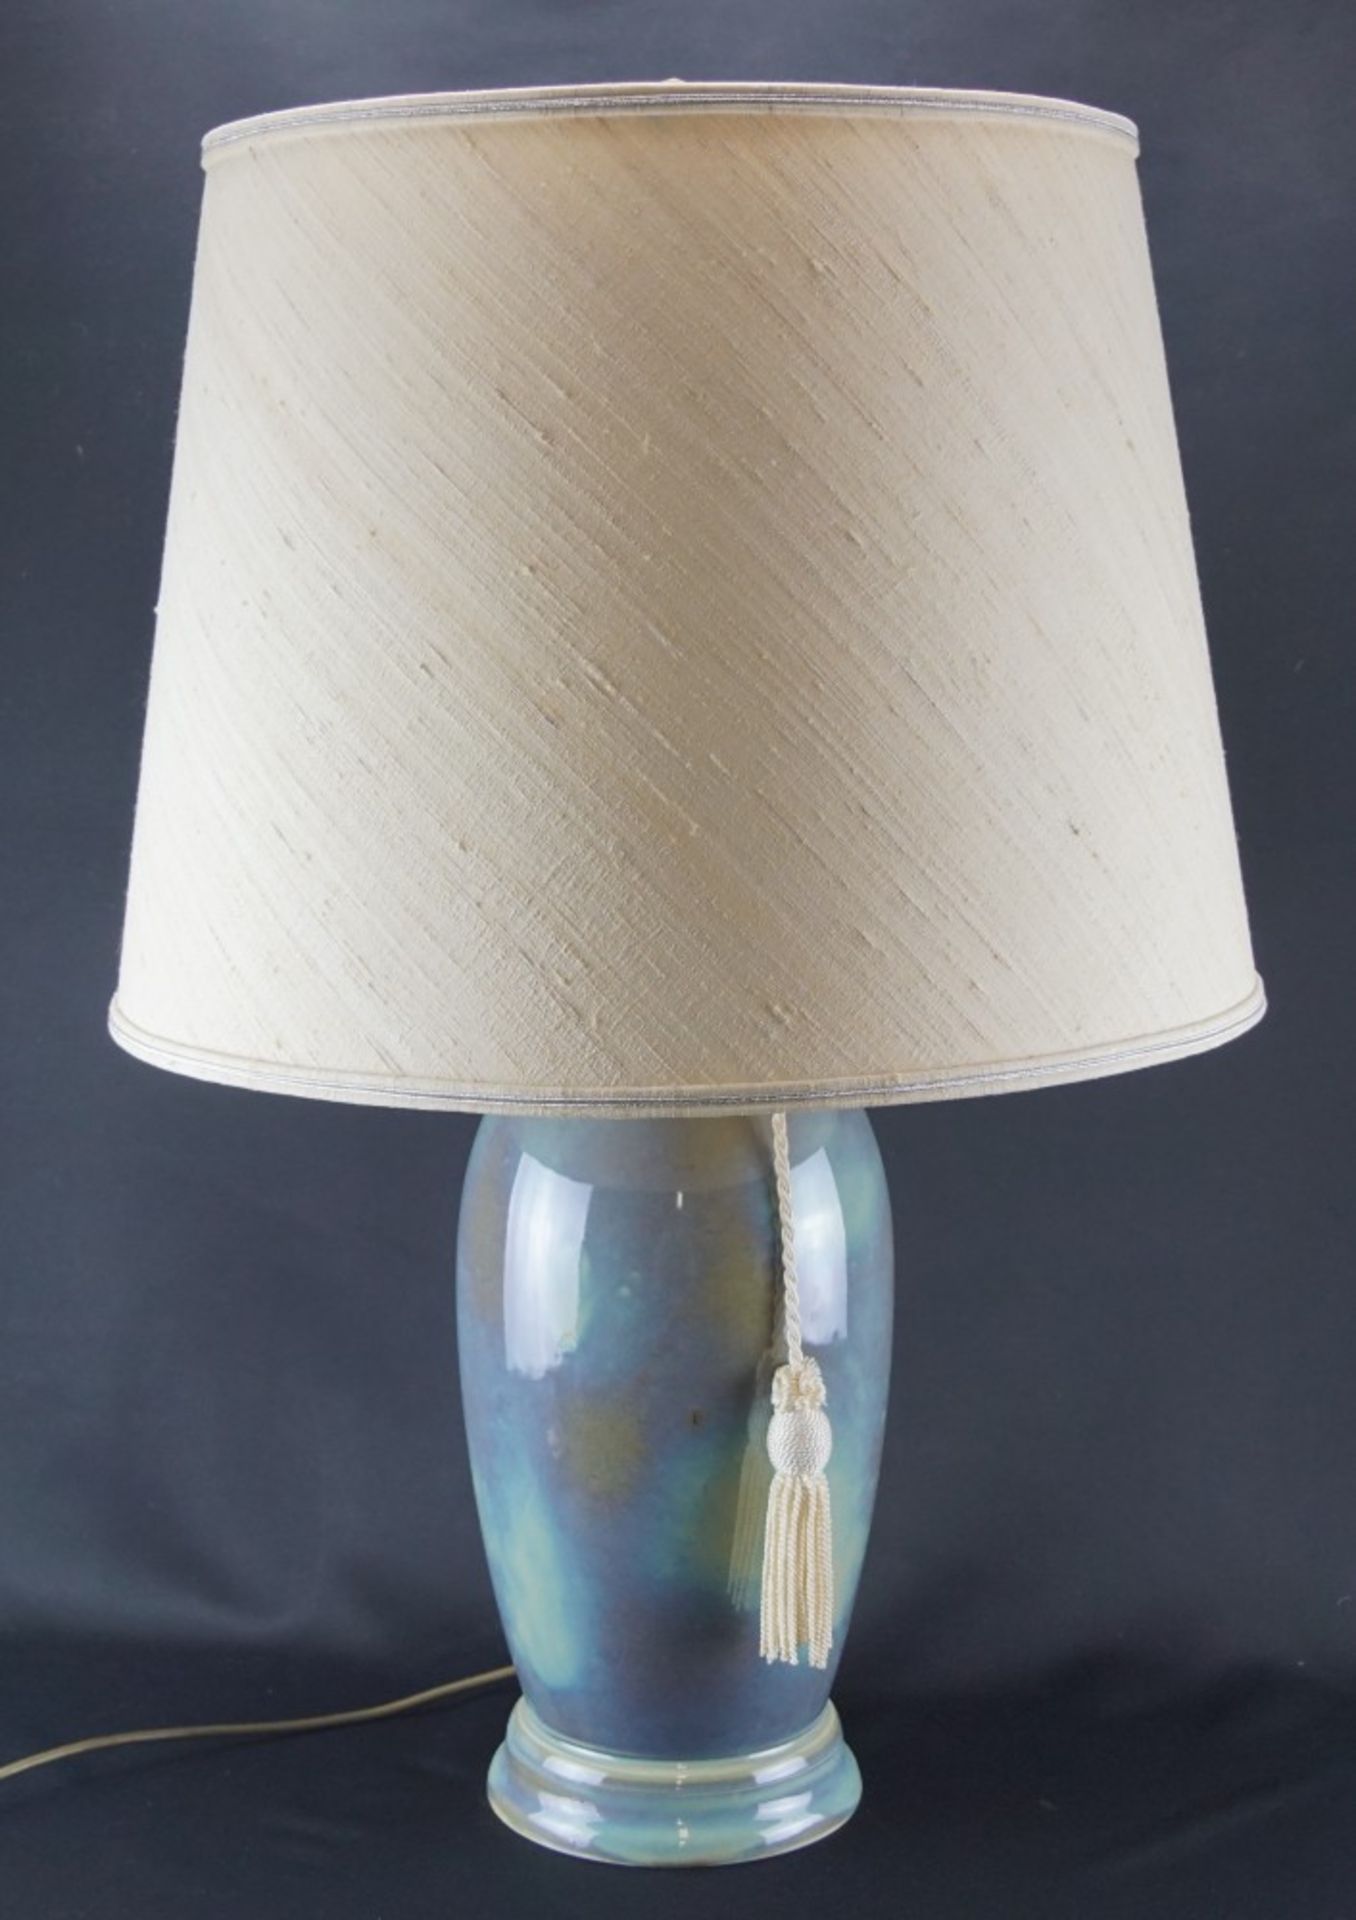 Tischlampe, RosenthalPorzellan, Höhe der Lampe 78 cm und Durchmesser des Schirms 50 cm, Funktion